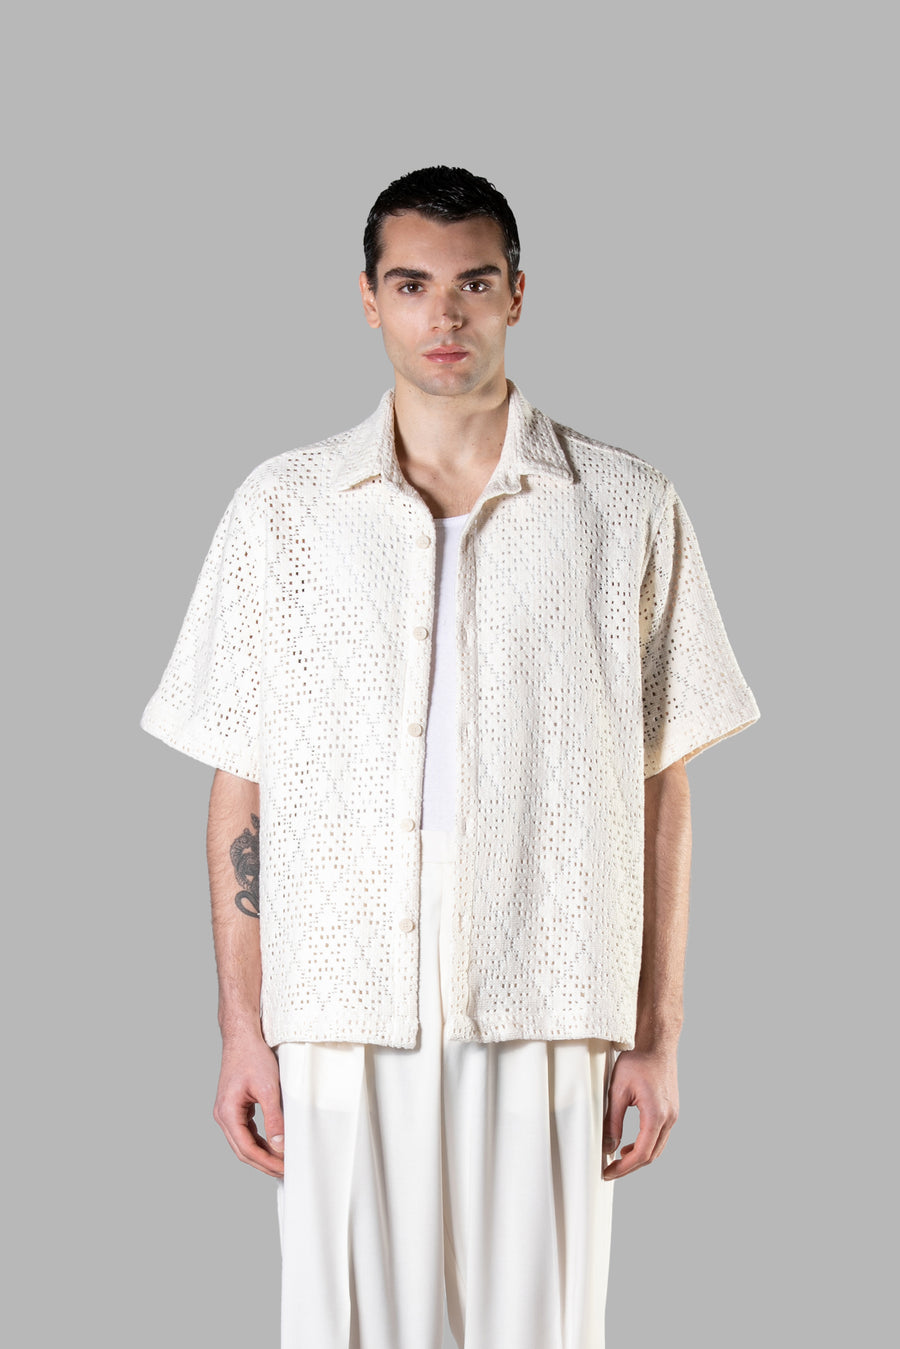 Camicia crochet in cotone traforata rombi - Panna